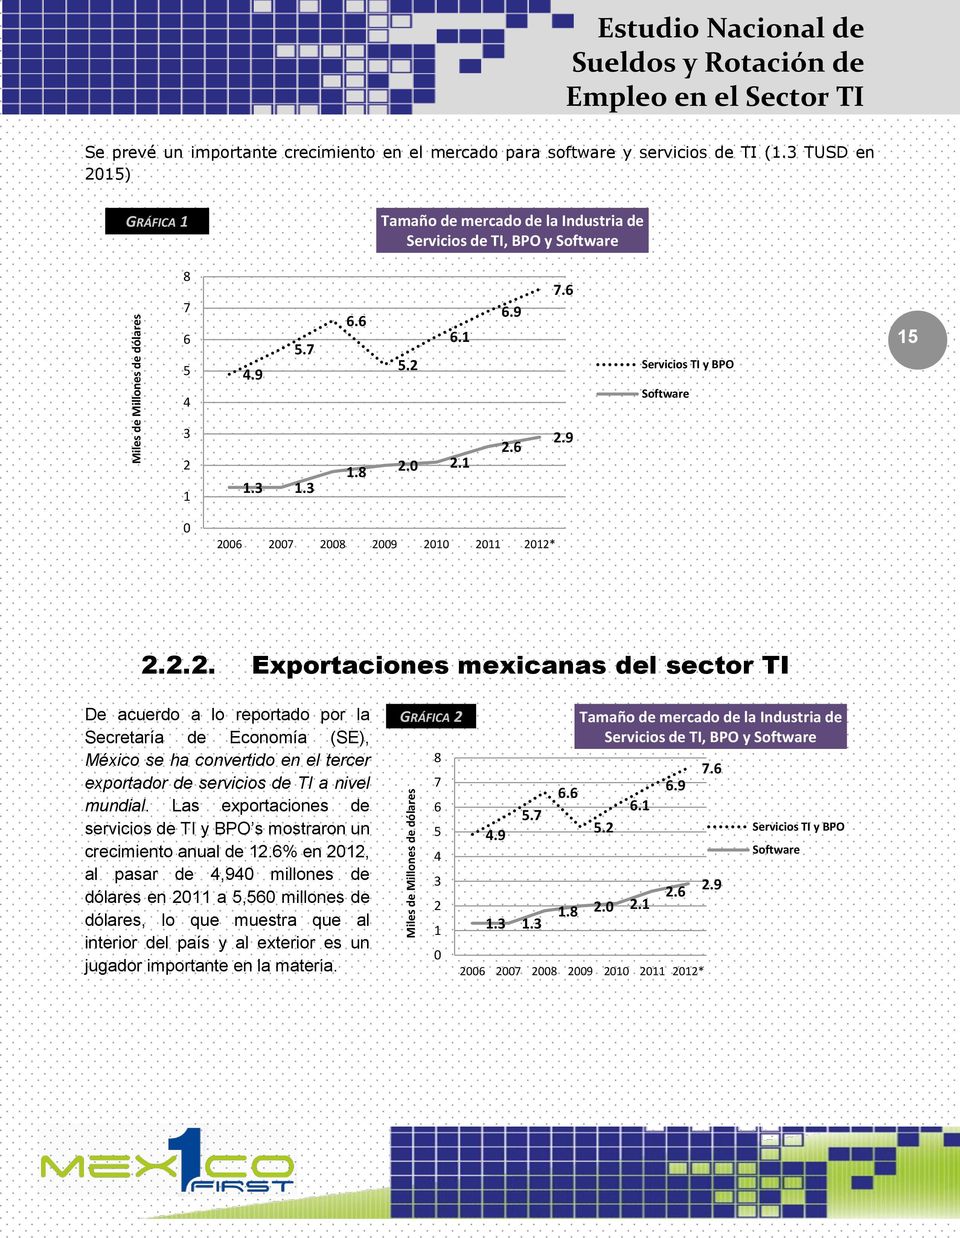 9 0 2006 2007 2008 2009 2010 2011 2012* 2.2.2. Exprtacines mexicanas del sectr TI De acuerd a l reprtad pr la Secretaría de Ecnmía (SE), Méxic se ha cnvertid en el tercer exprtadr de servicis de TI a nivel mundial.